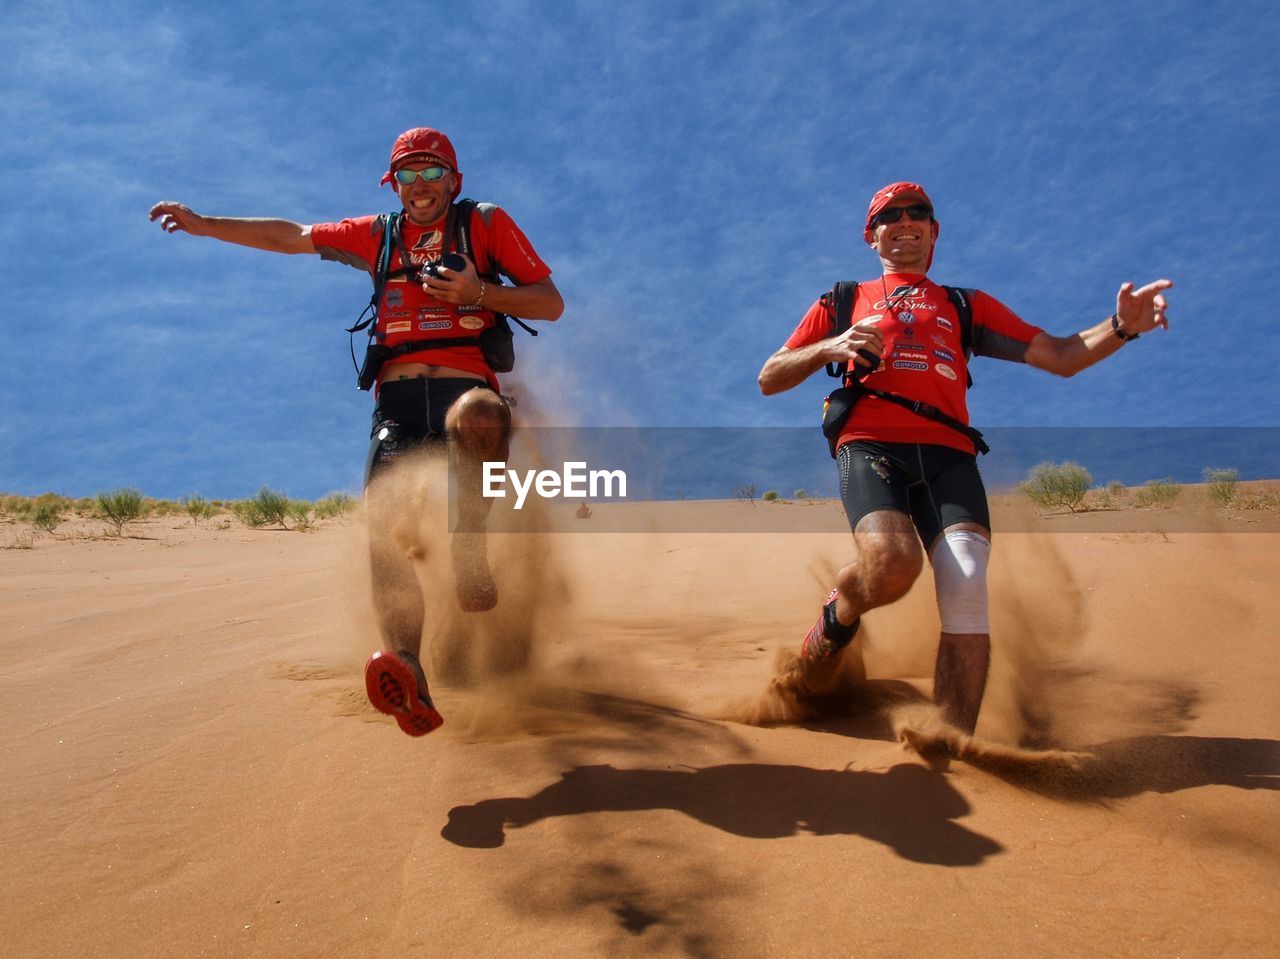 PEOPLE RUNNING ON SAND DUNE IN DESERT